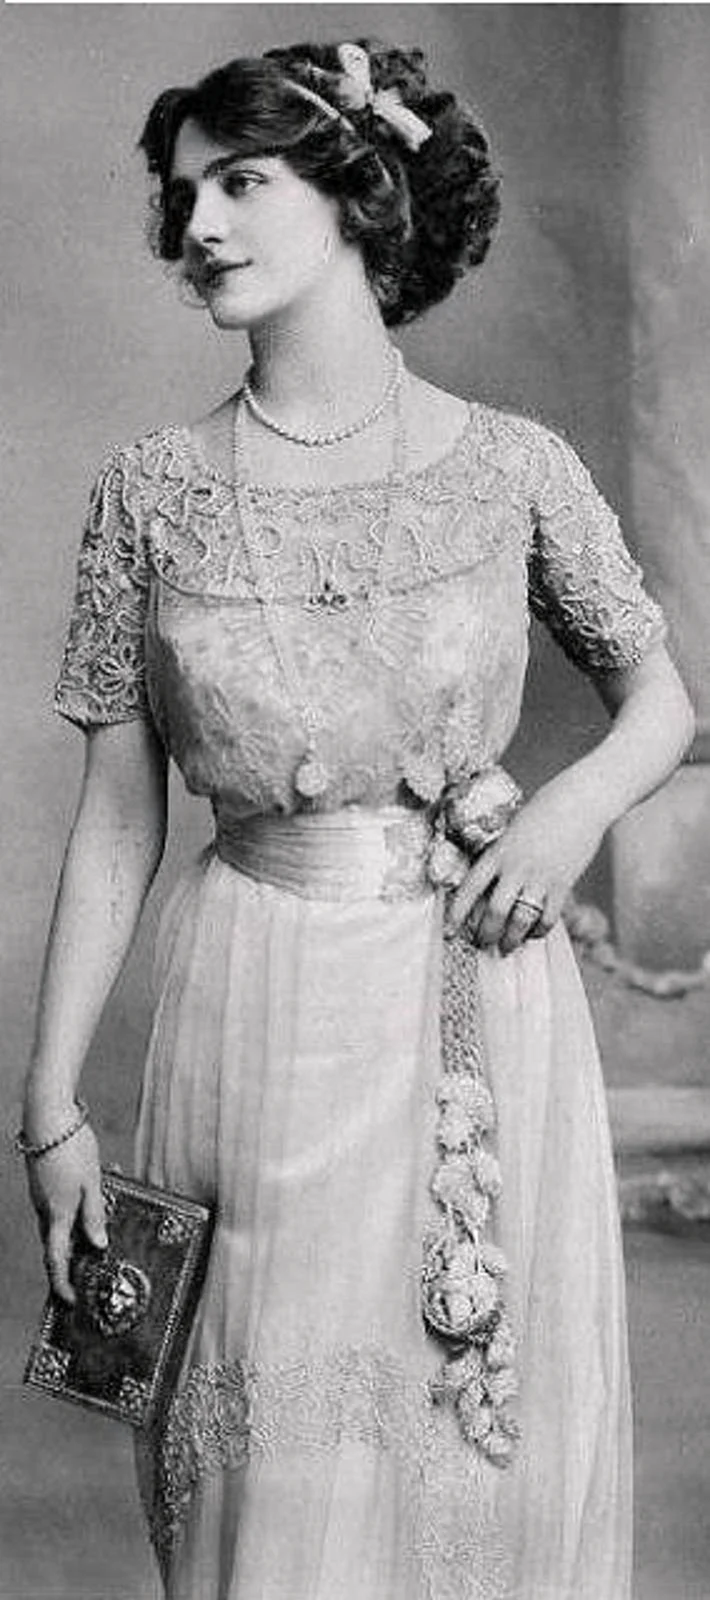 Лили Элси 1886-1962